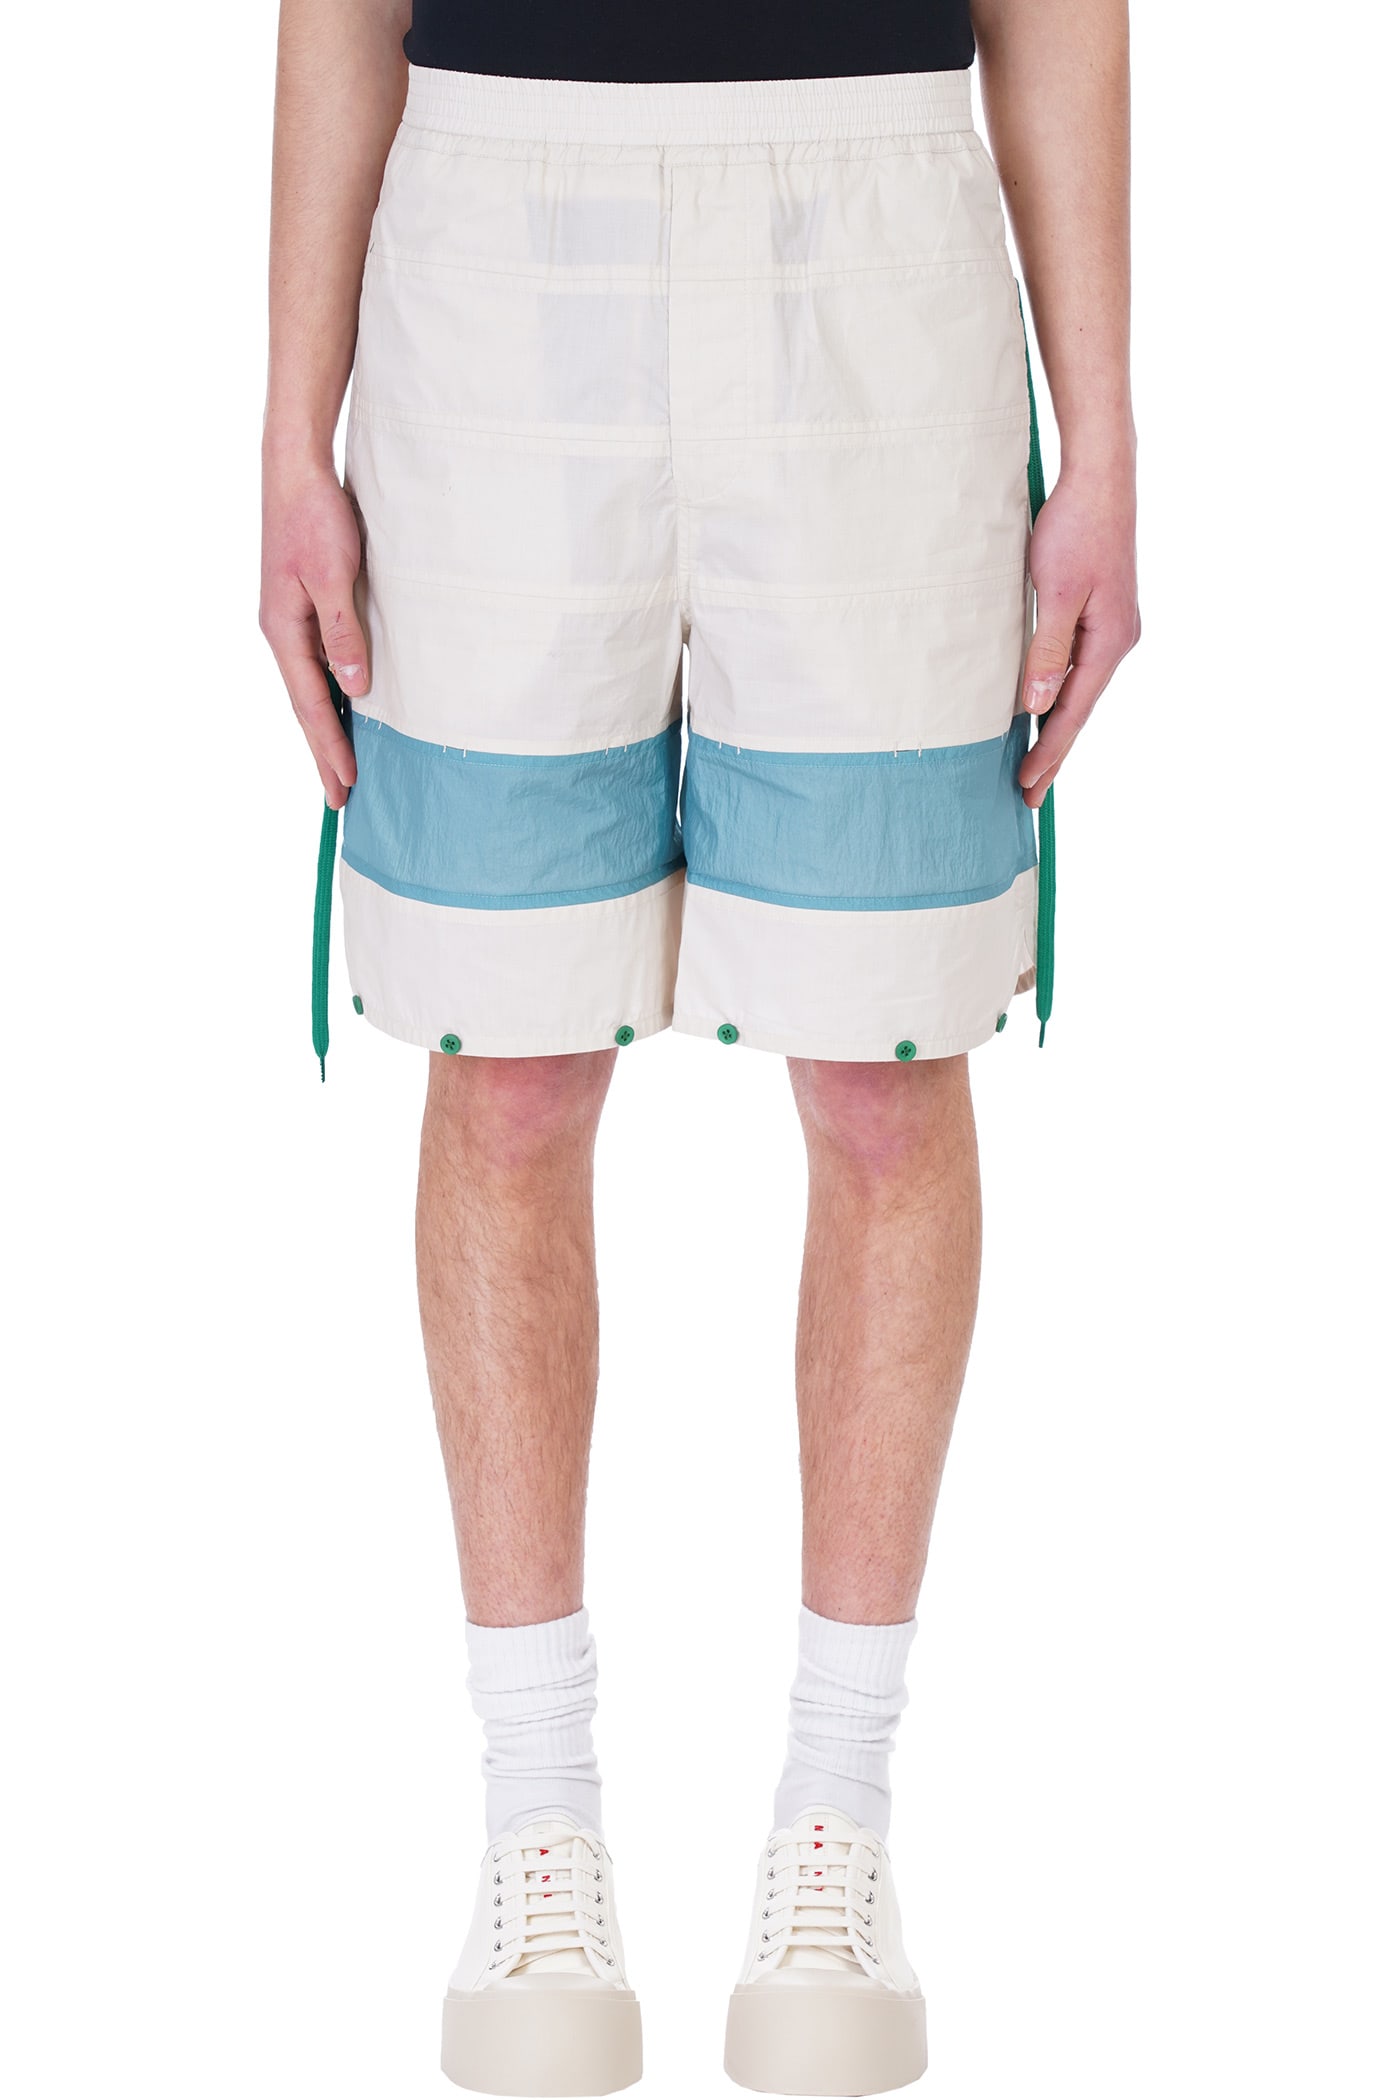 Craig Green Shorts In Beige Cotton